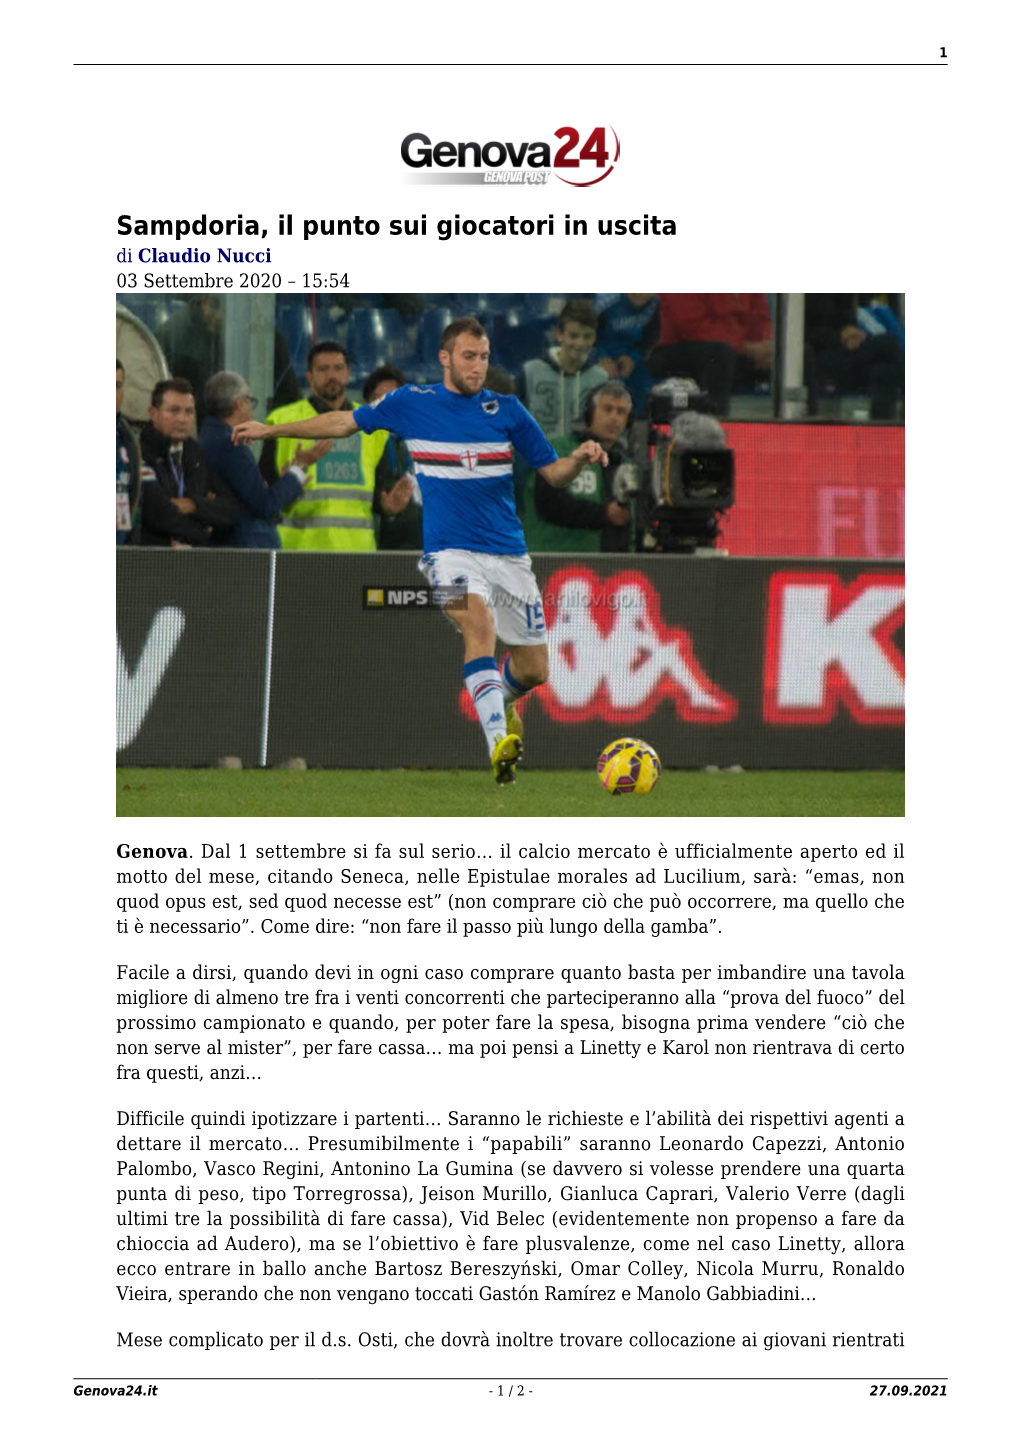 Sampdoria, Il Punto Sui Giocatori in Uscita Di Claudio Nucci 03 Settembre 2020 – 15:54